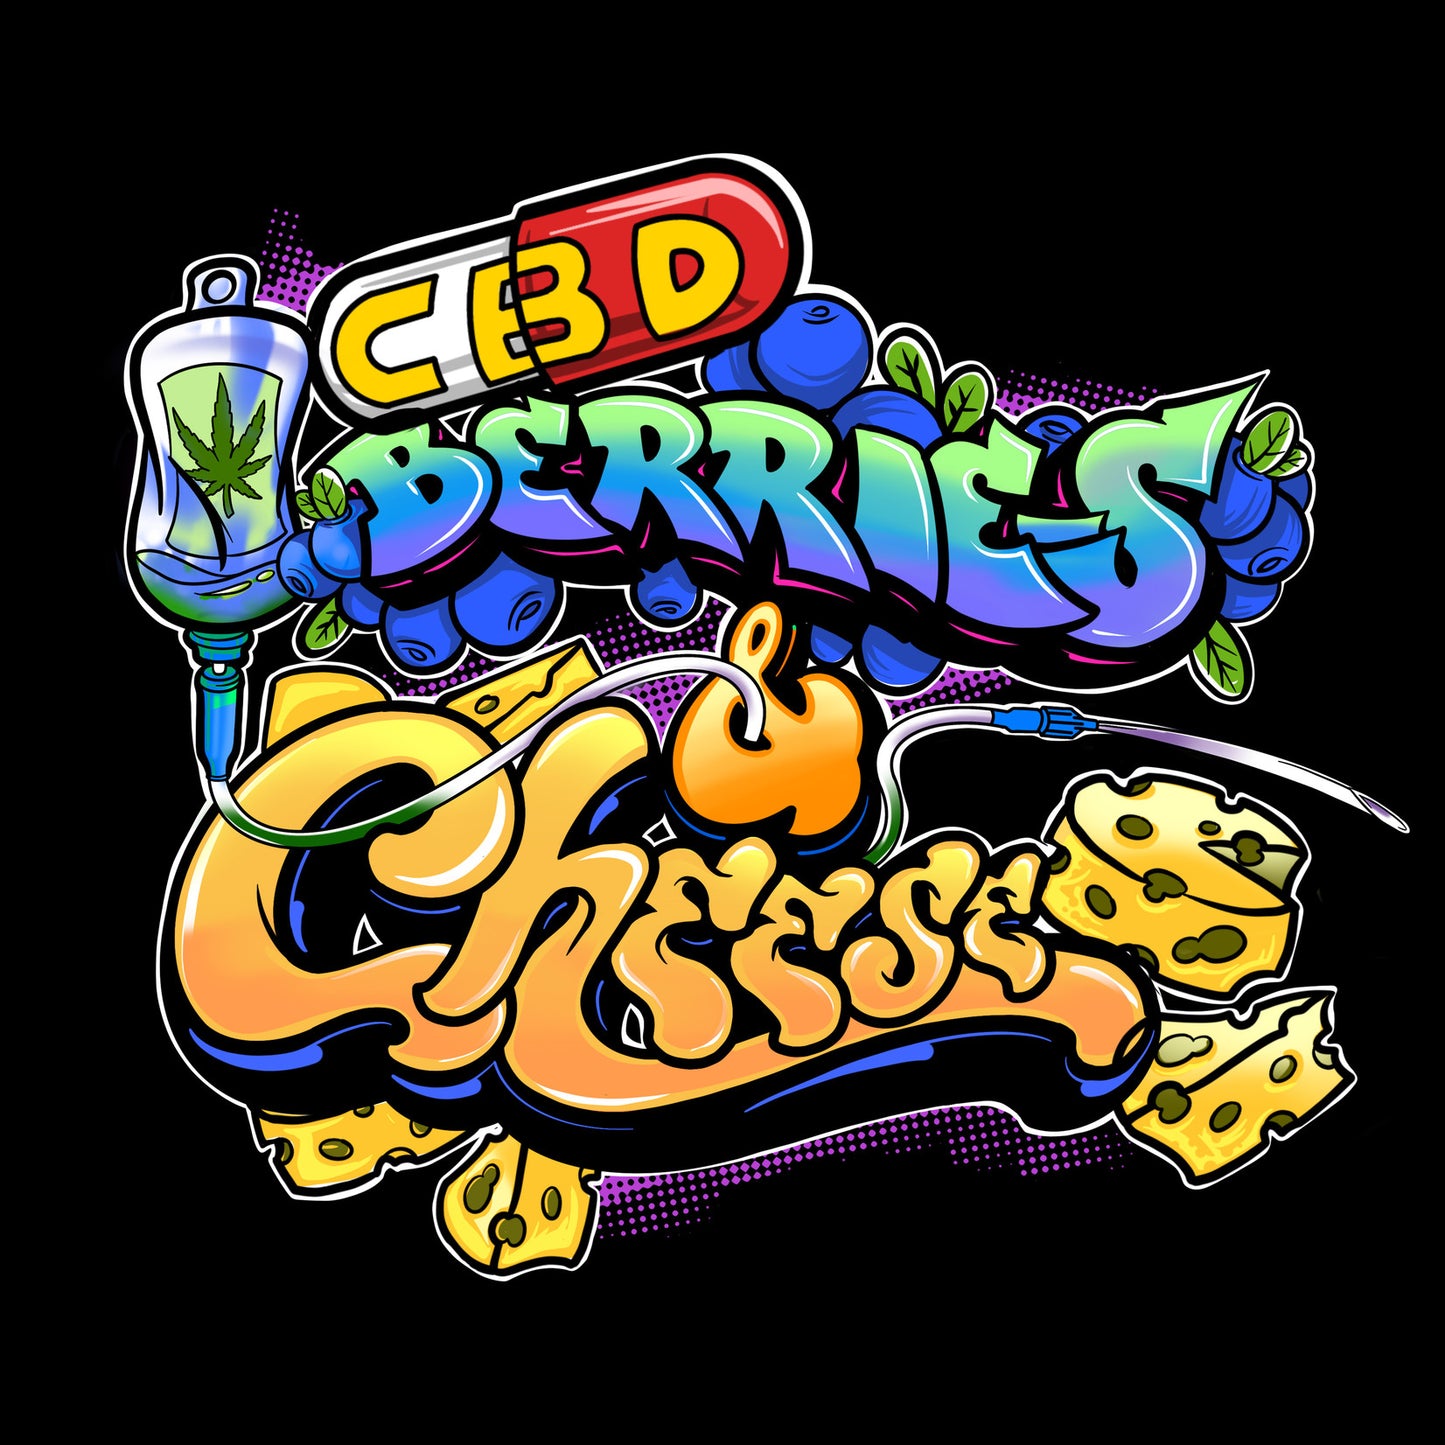 CBD Berries & Cheese 1:1